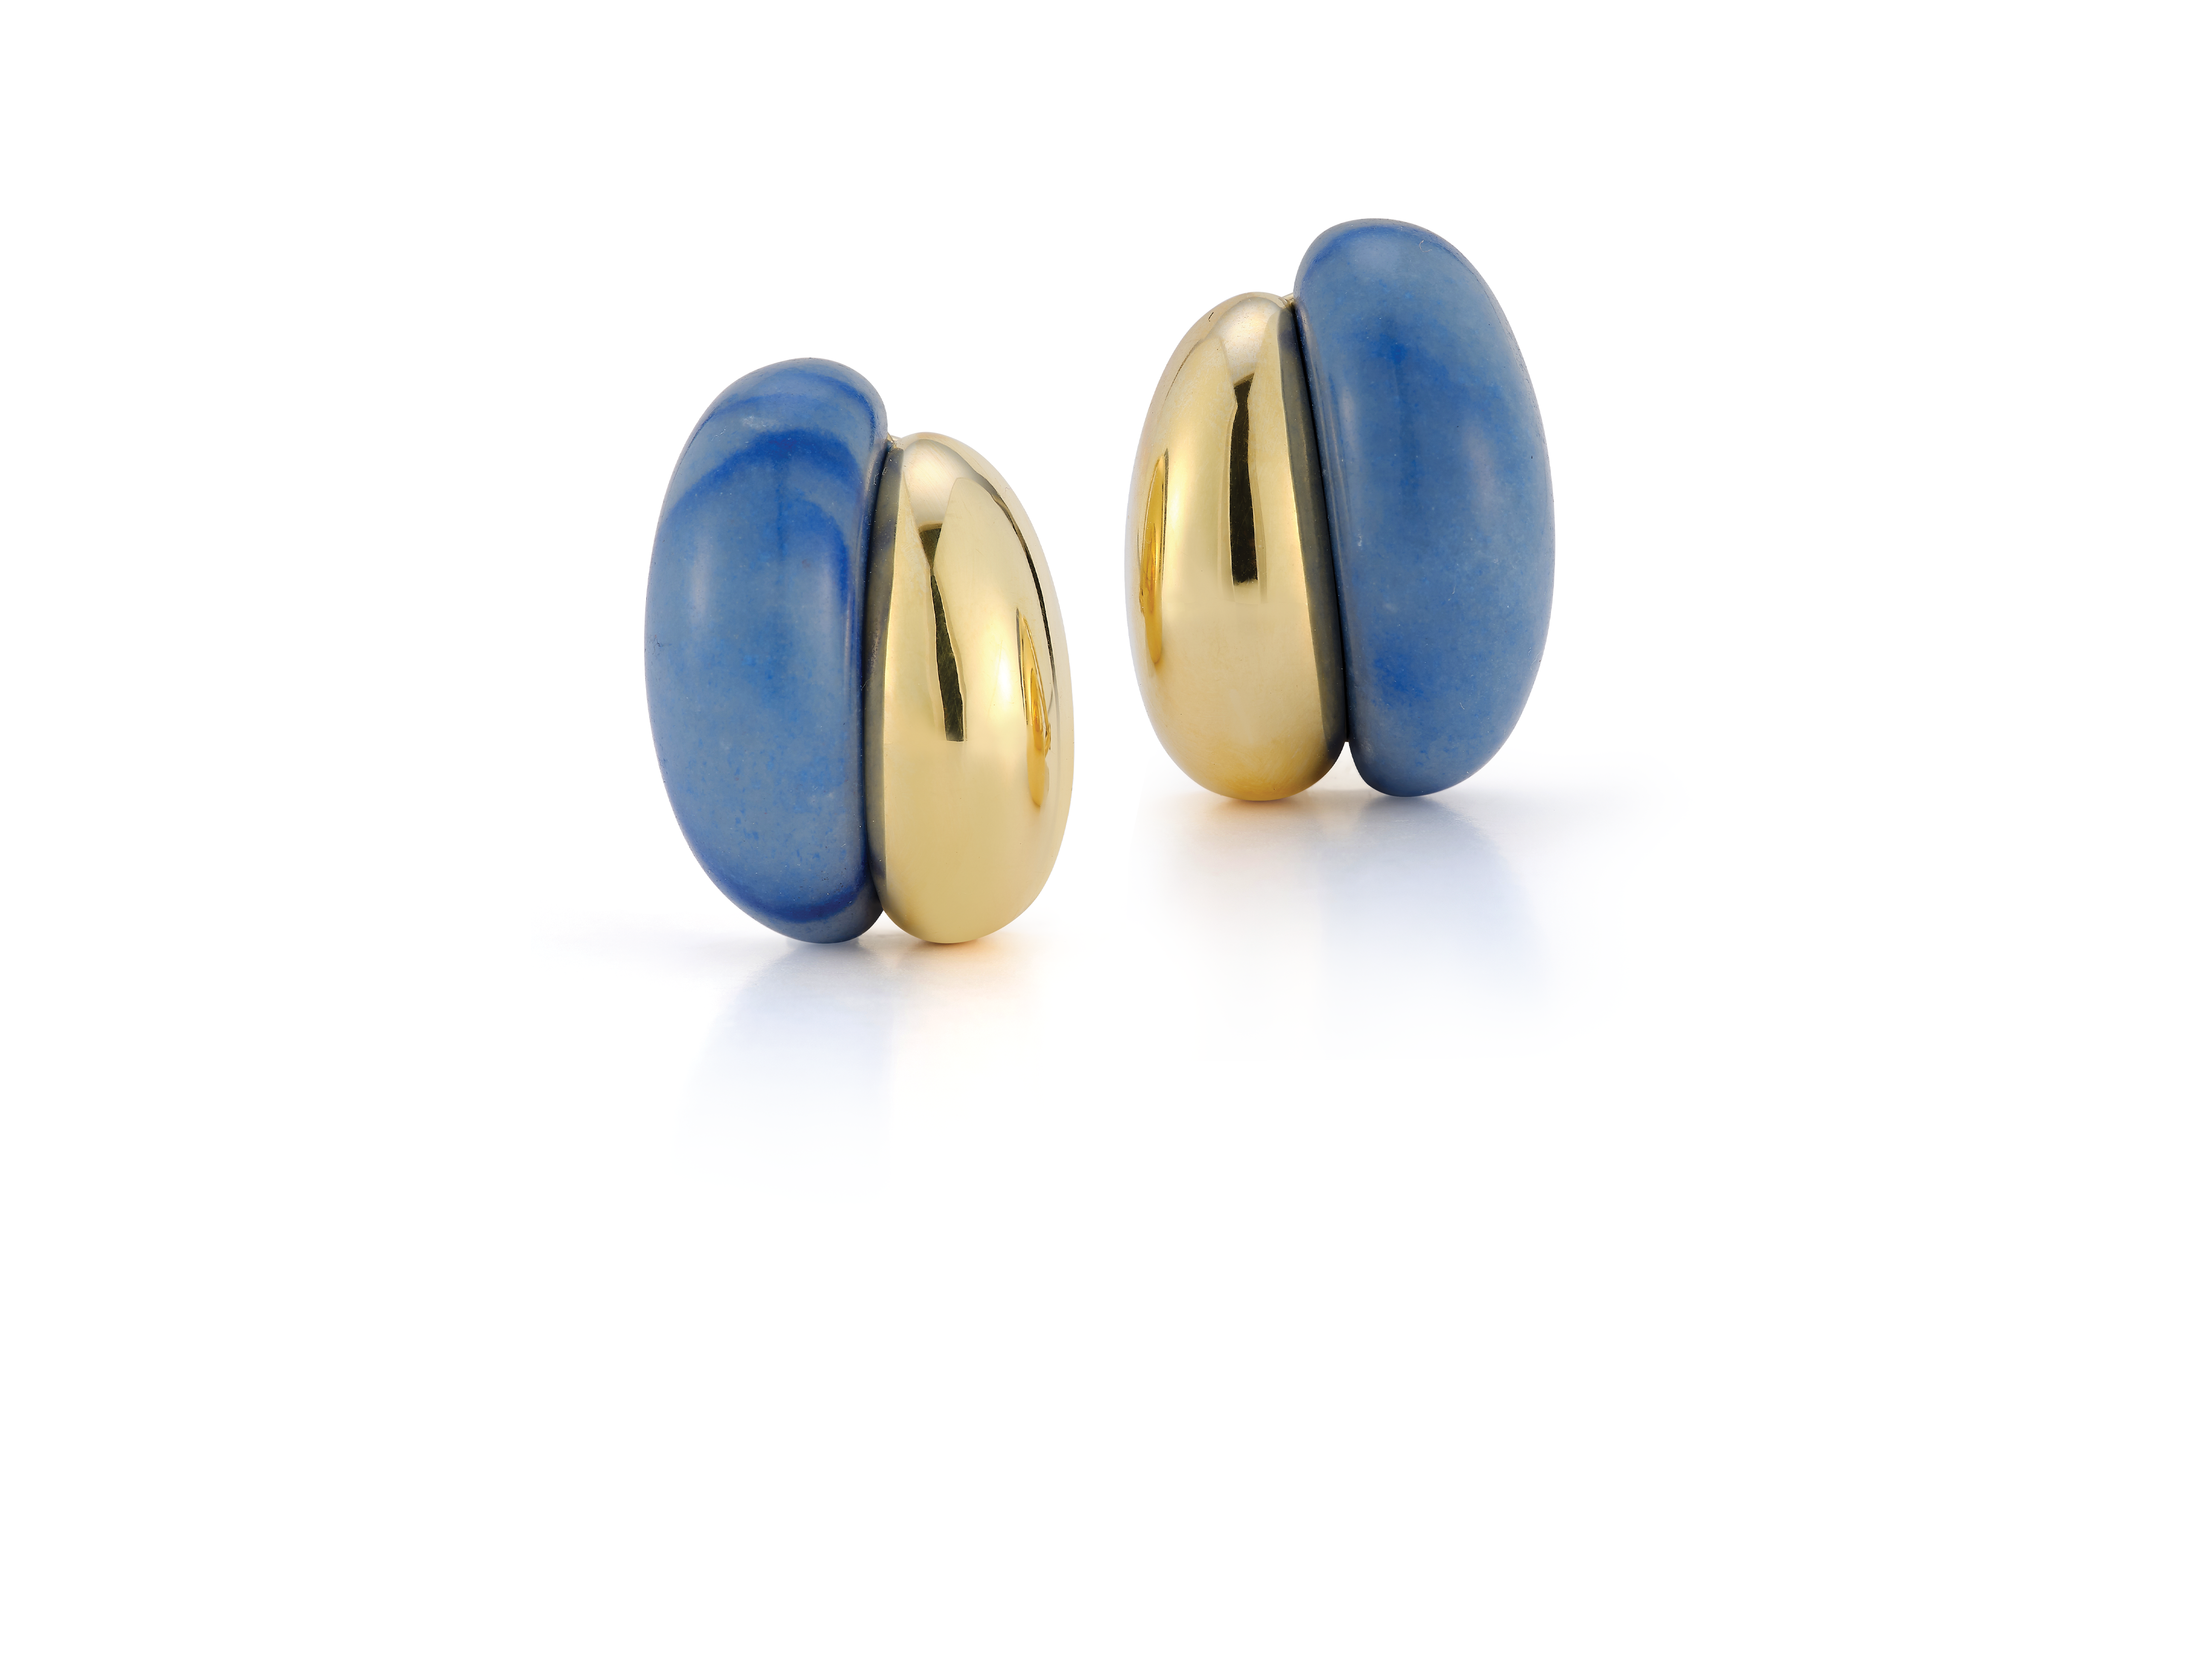 Silhouette Earrings in Blue Aventurine